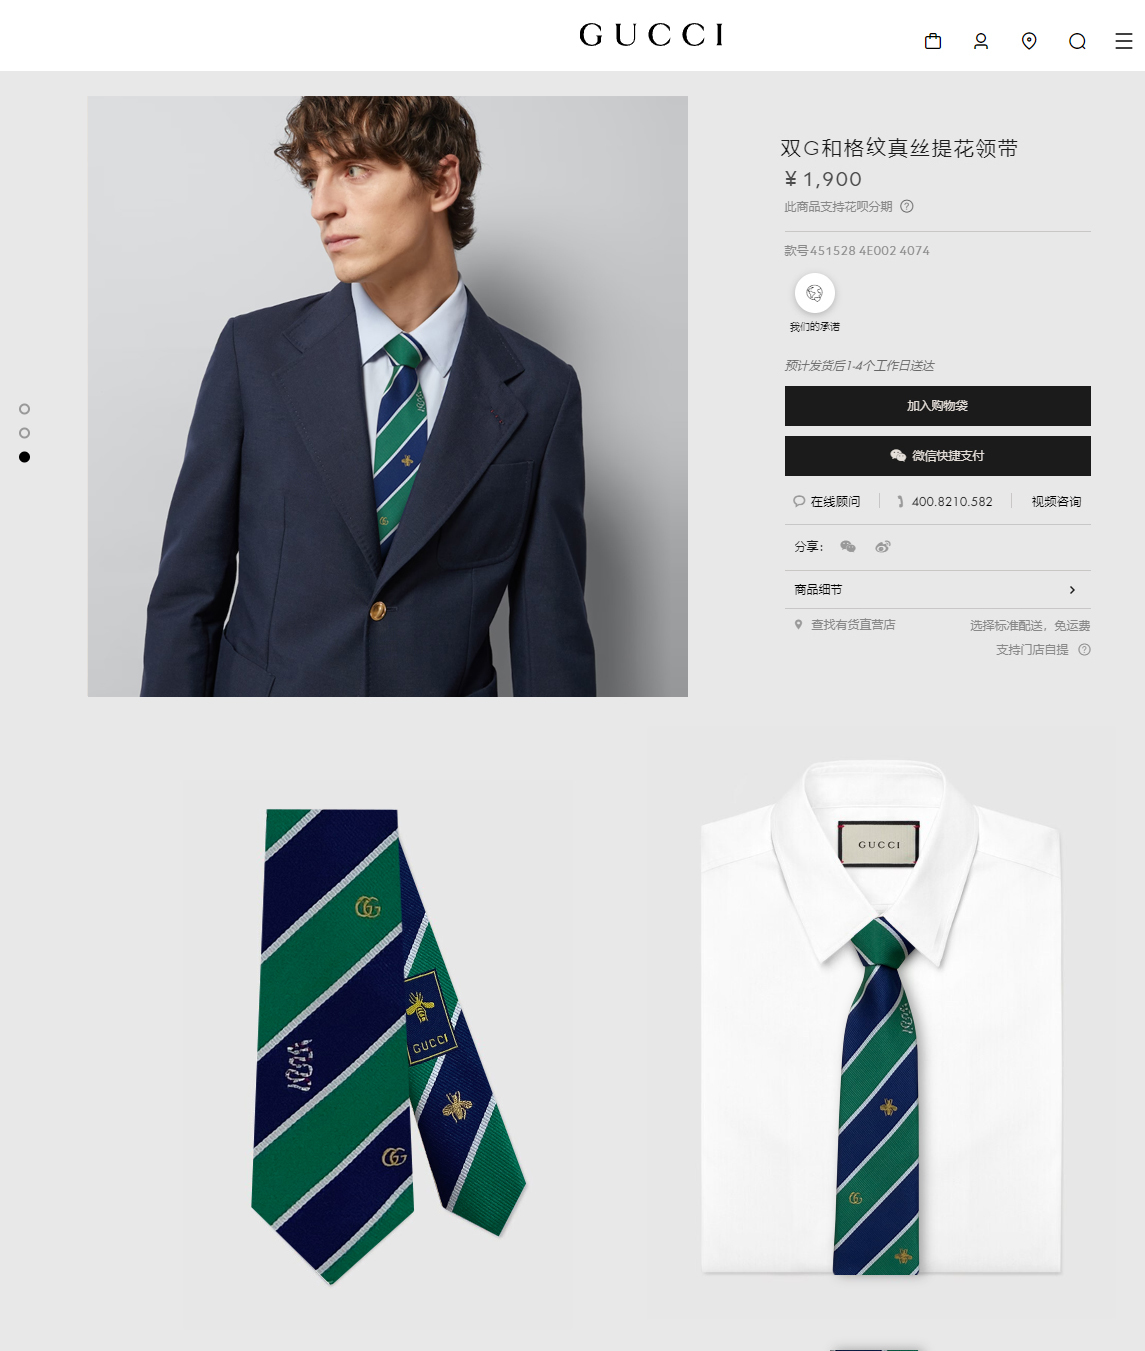 上新特价G家专柜新款男士领带稀有采用经典小G搭配交叉线条格纹展现精湛手工与时尚优雅的理想选择这款领带将标